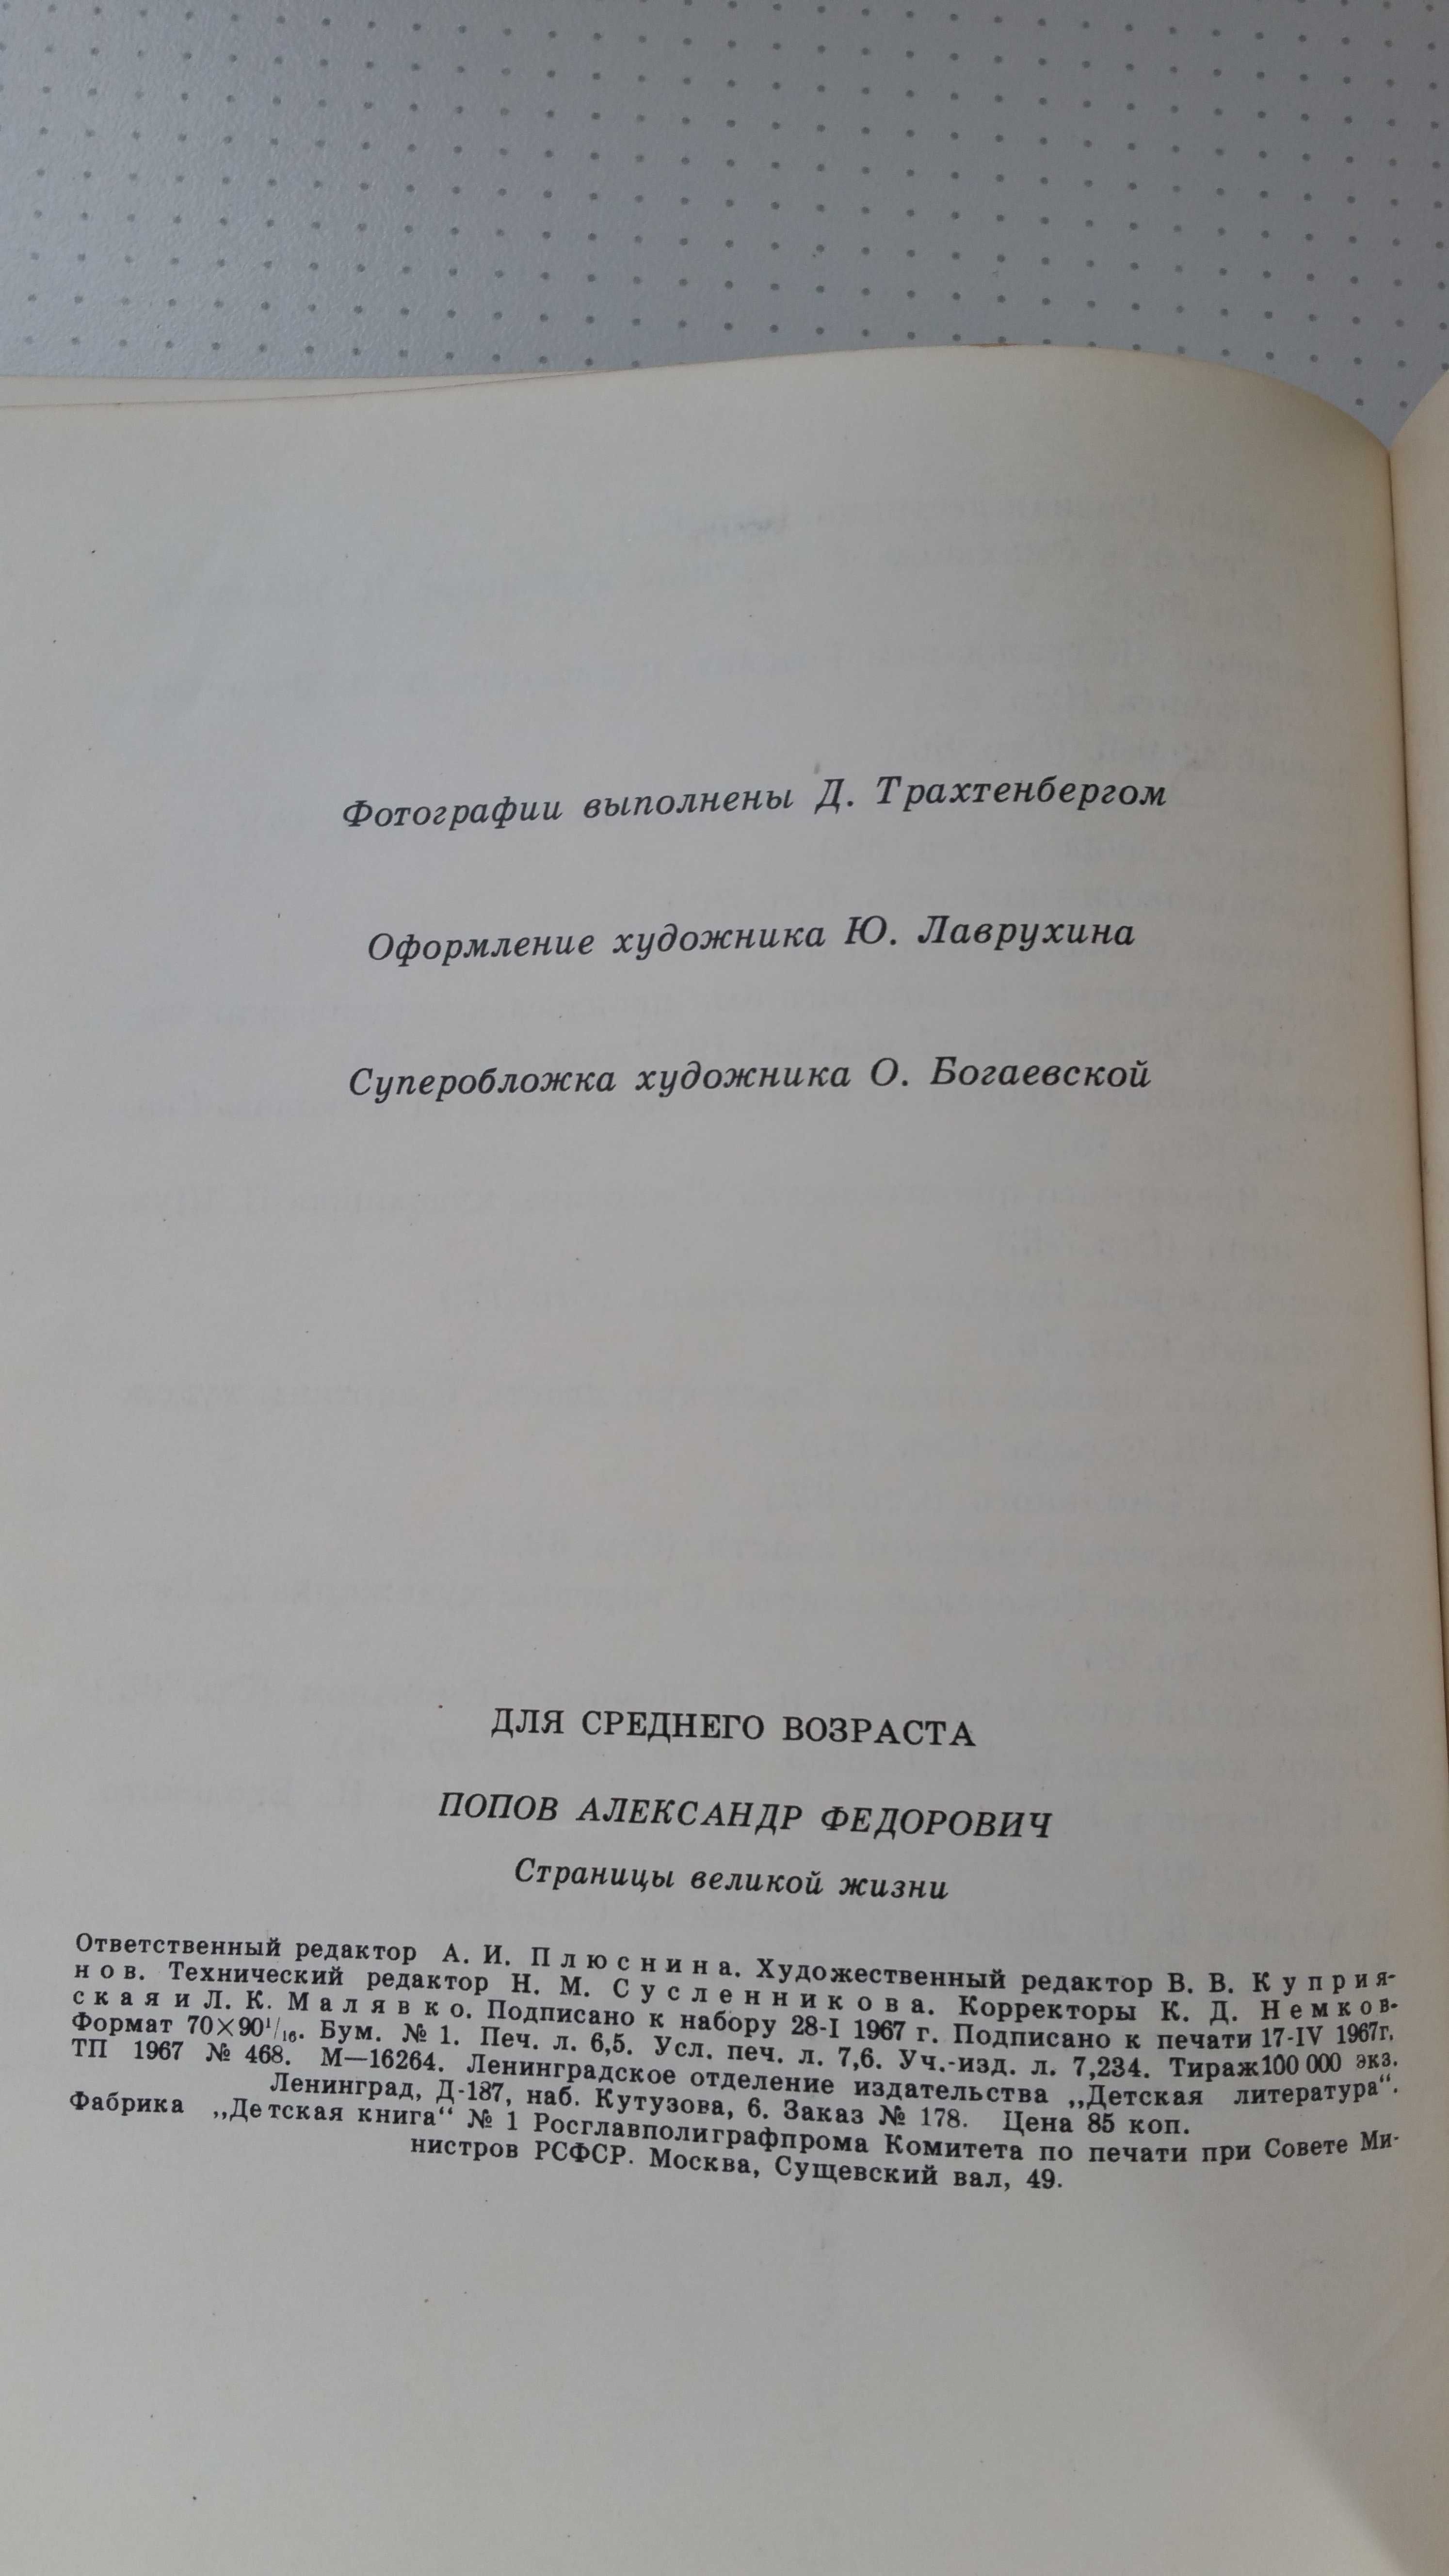 Книга о жизни В.И. Ленина